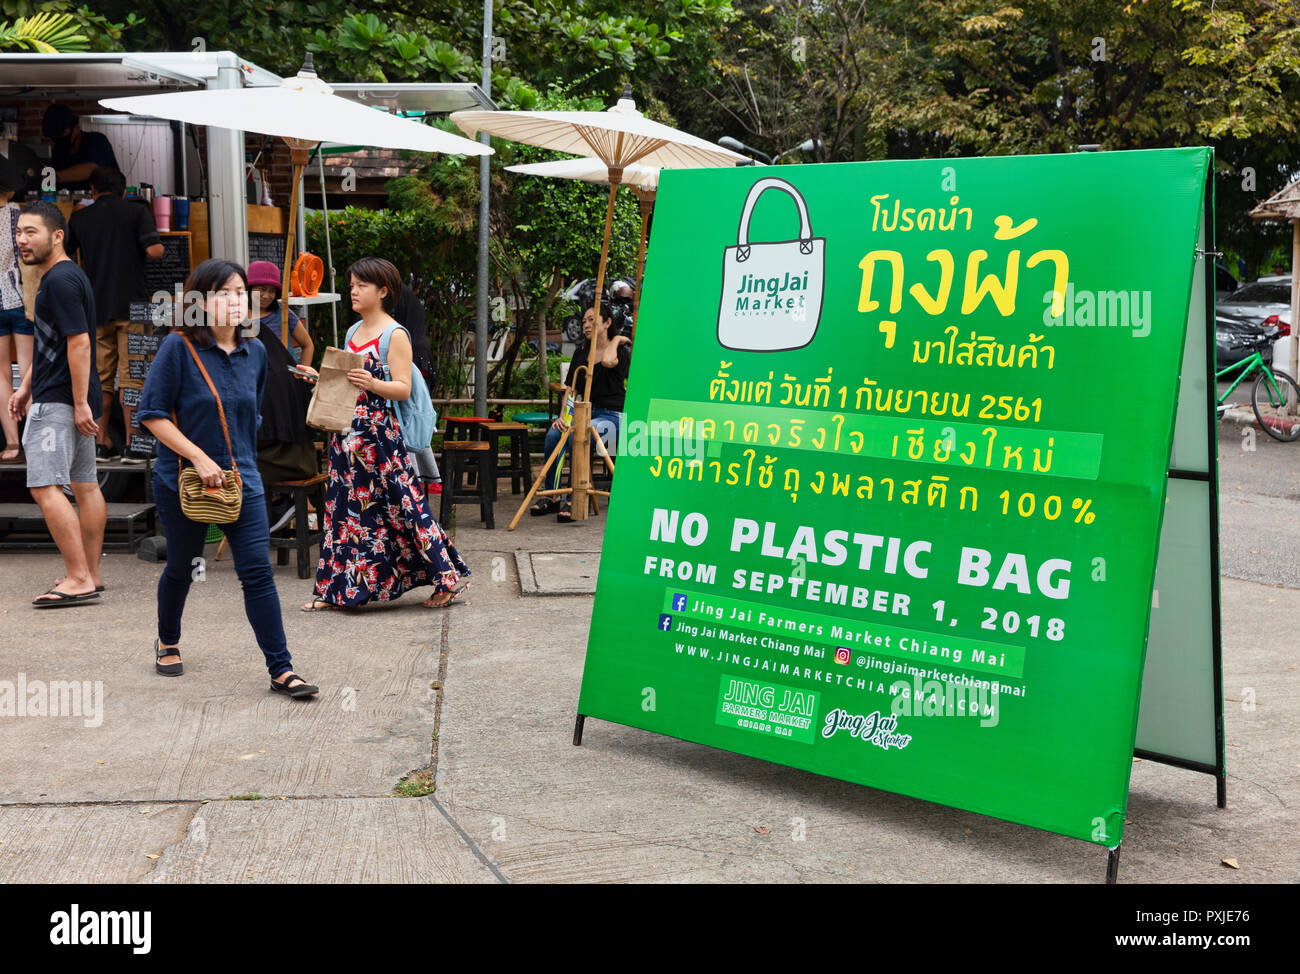 N. di sacchetti di plastica firmare al settimanale, succedendo JingJai organico Mercato Agricolo, Chiang Mai, Thailandia Foto Stock